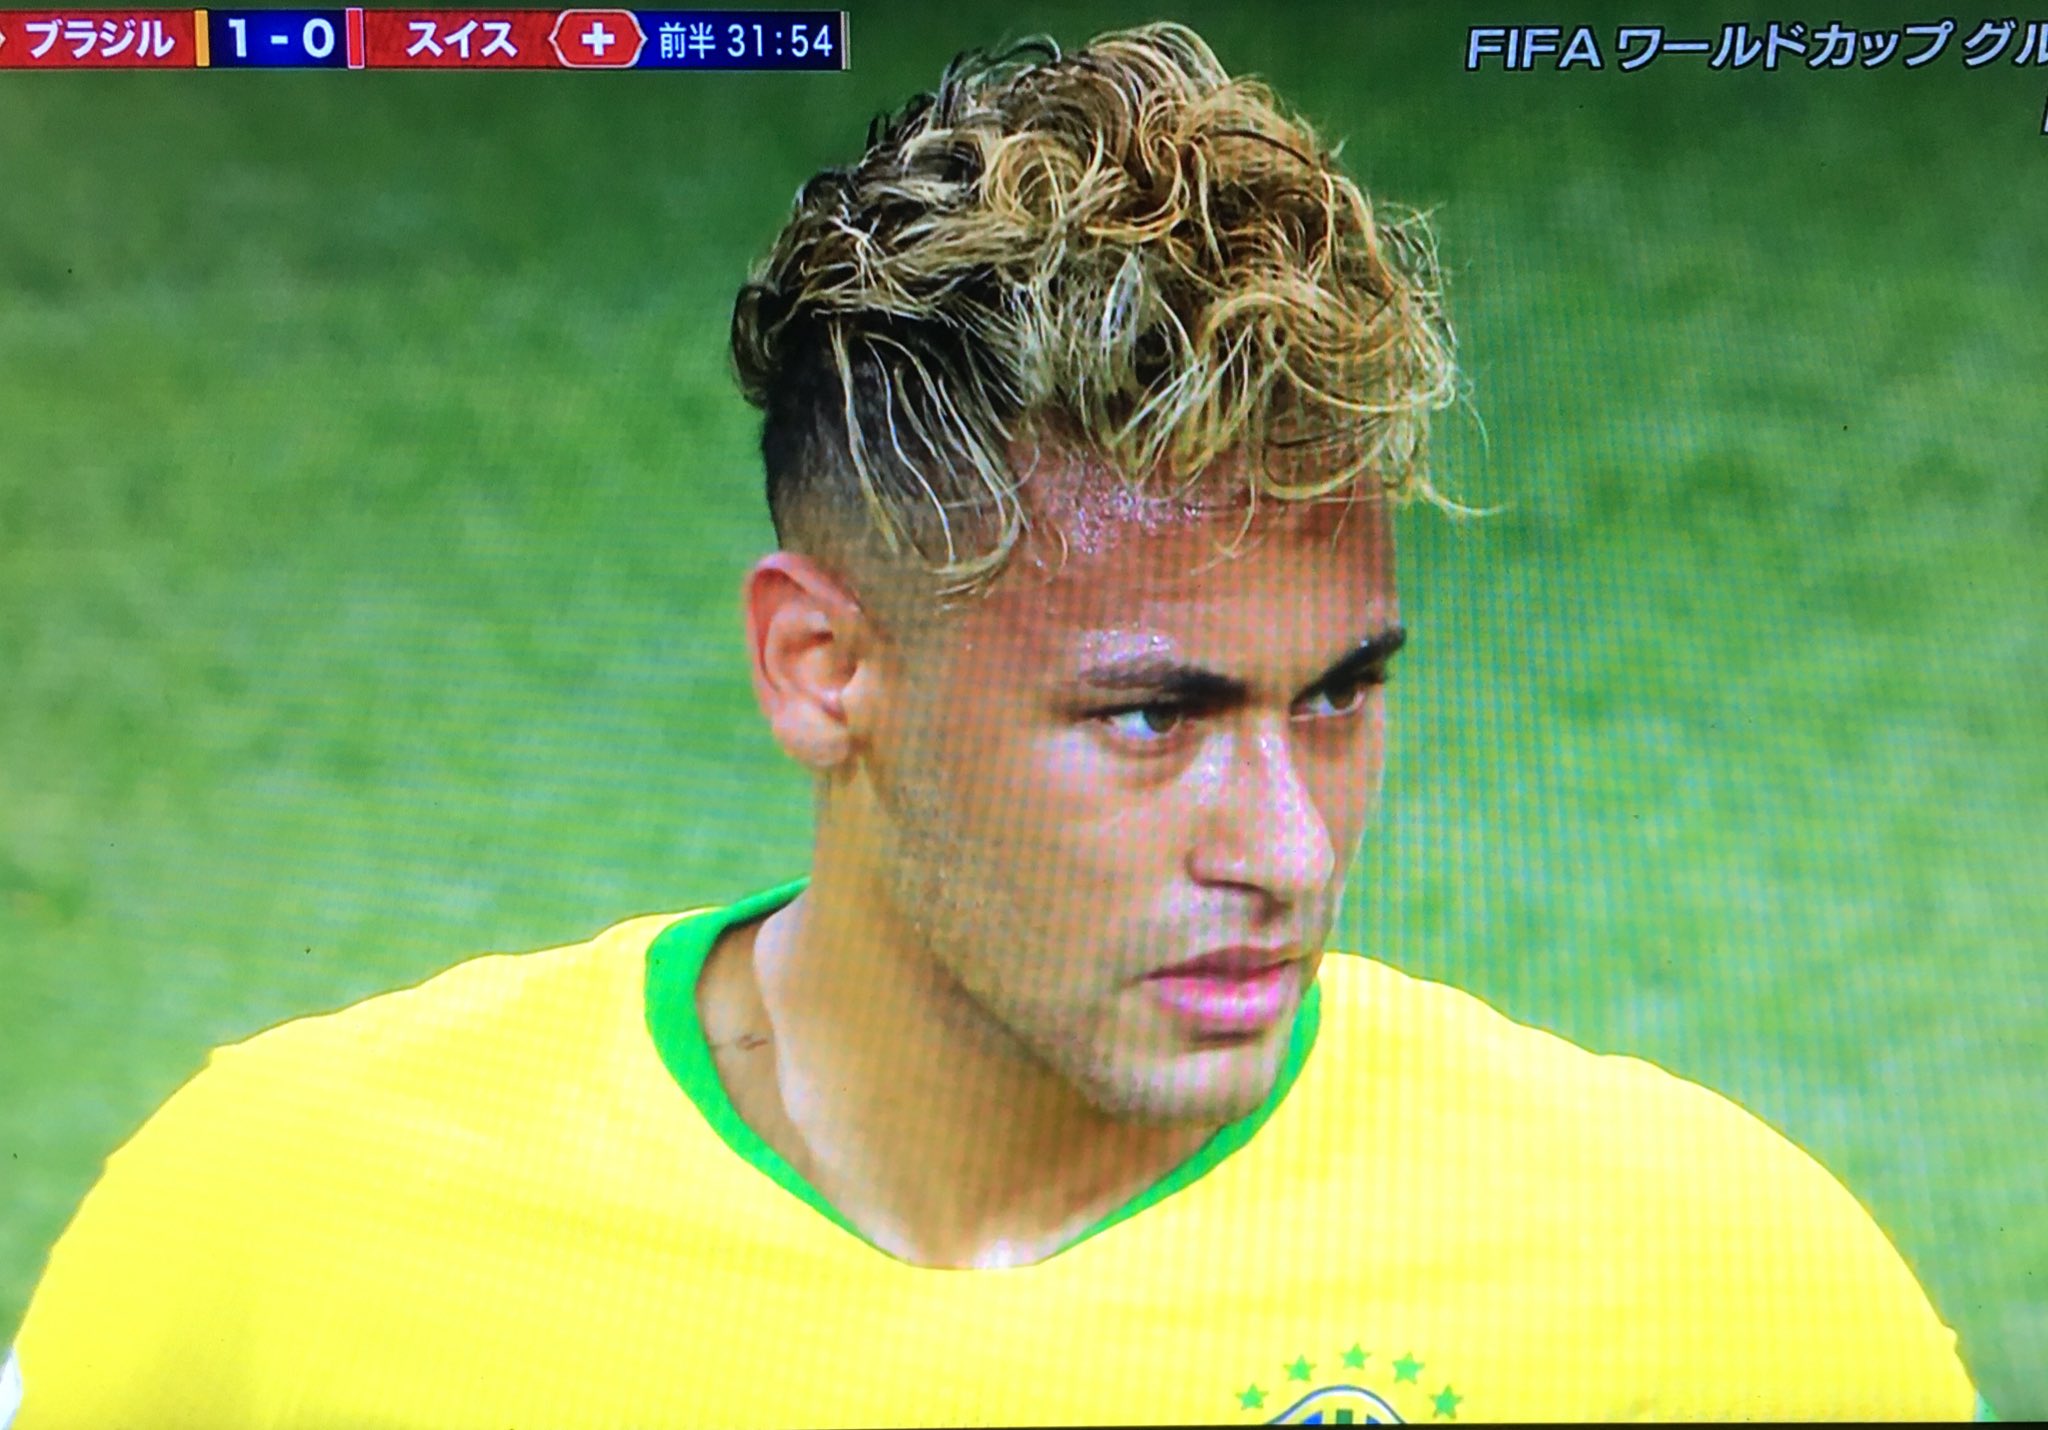 Yoito Na Twitterze ネイマールの髪型 いつになったら慣れるんだ ブラジル X スイス W杯 ワールドカップ T Co Picx0fznmq Twitter